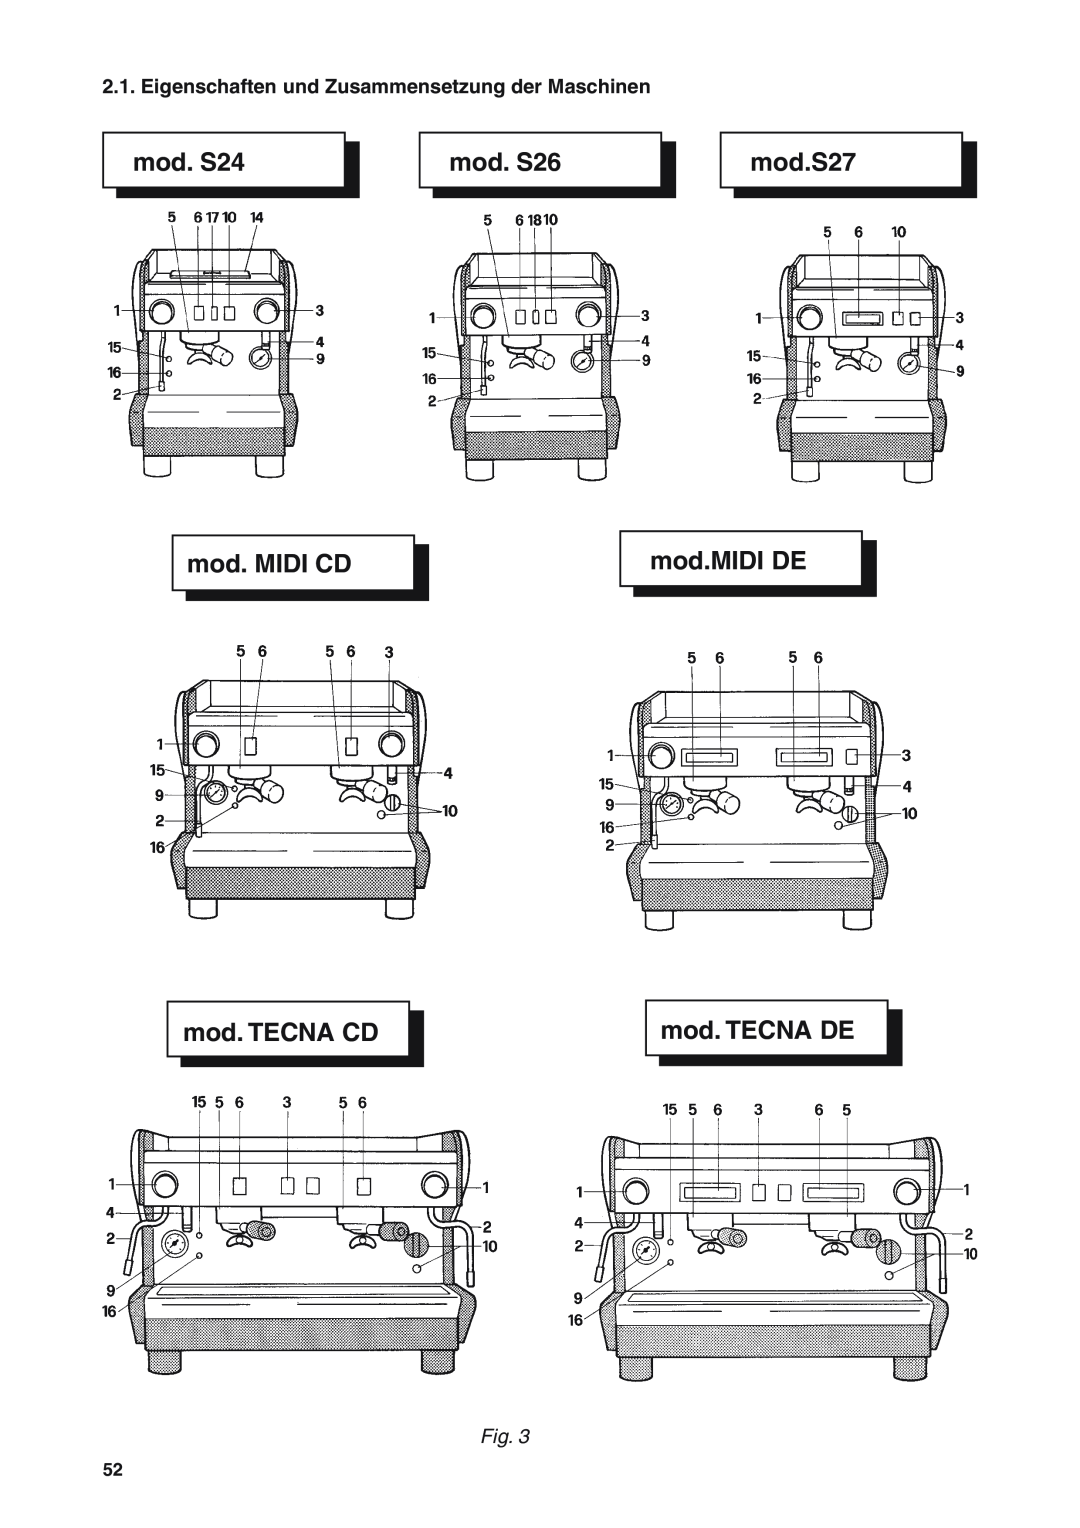 Rancilio S20 manual Eigenschaften und Zusammensetzung der Maschinen, mod. S24, mod. S26, mod.S27, mod. MIDI CD, mod.MIDI DE 